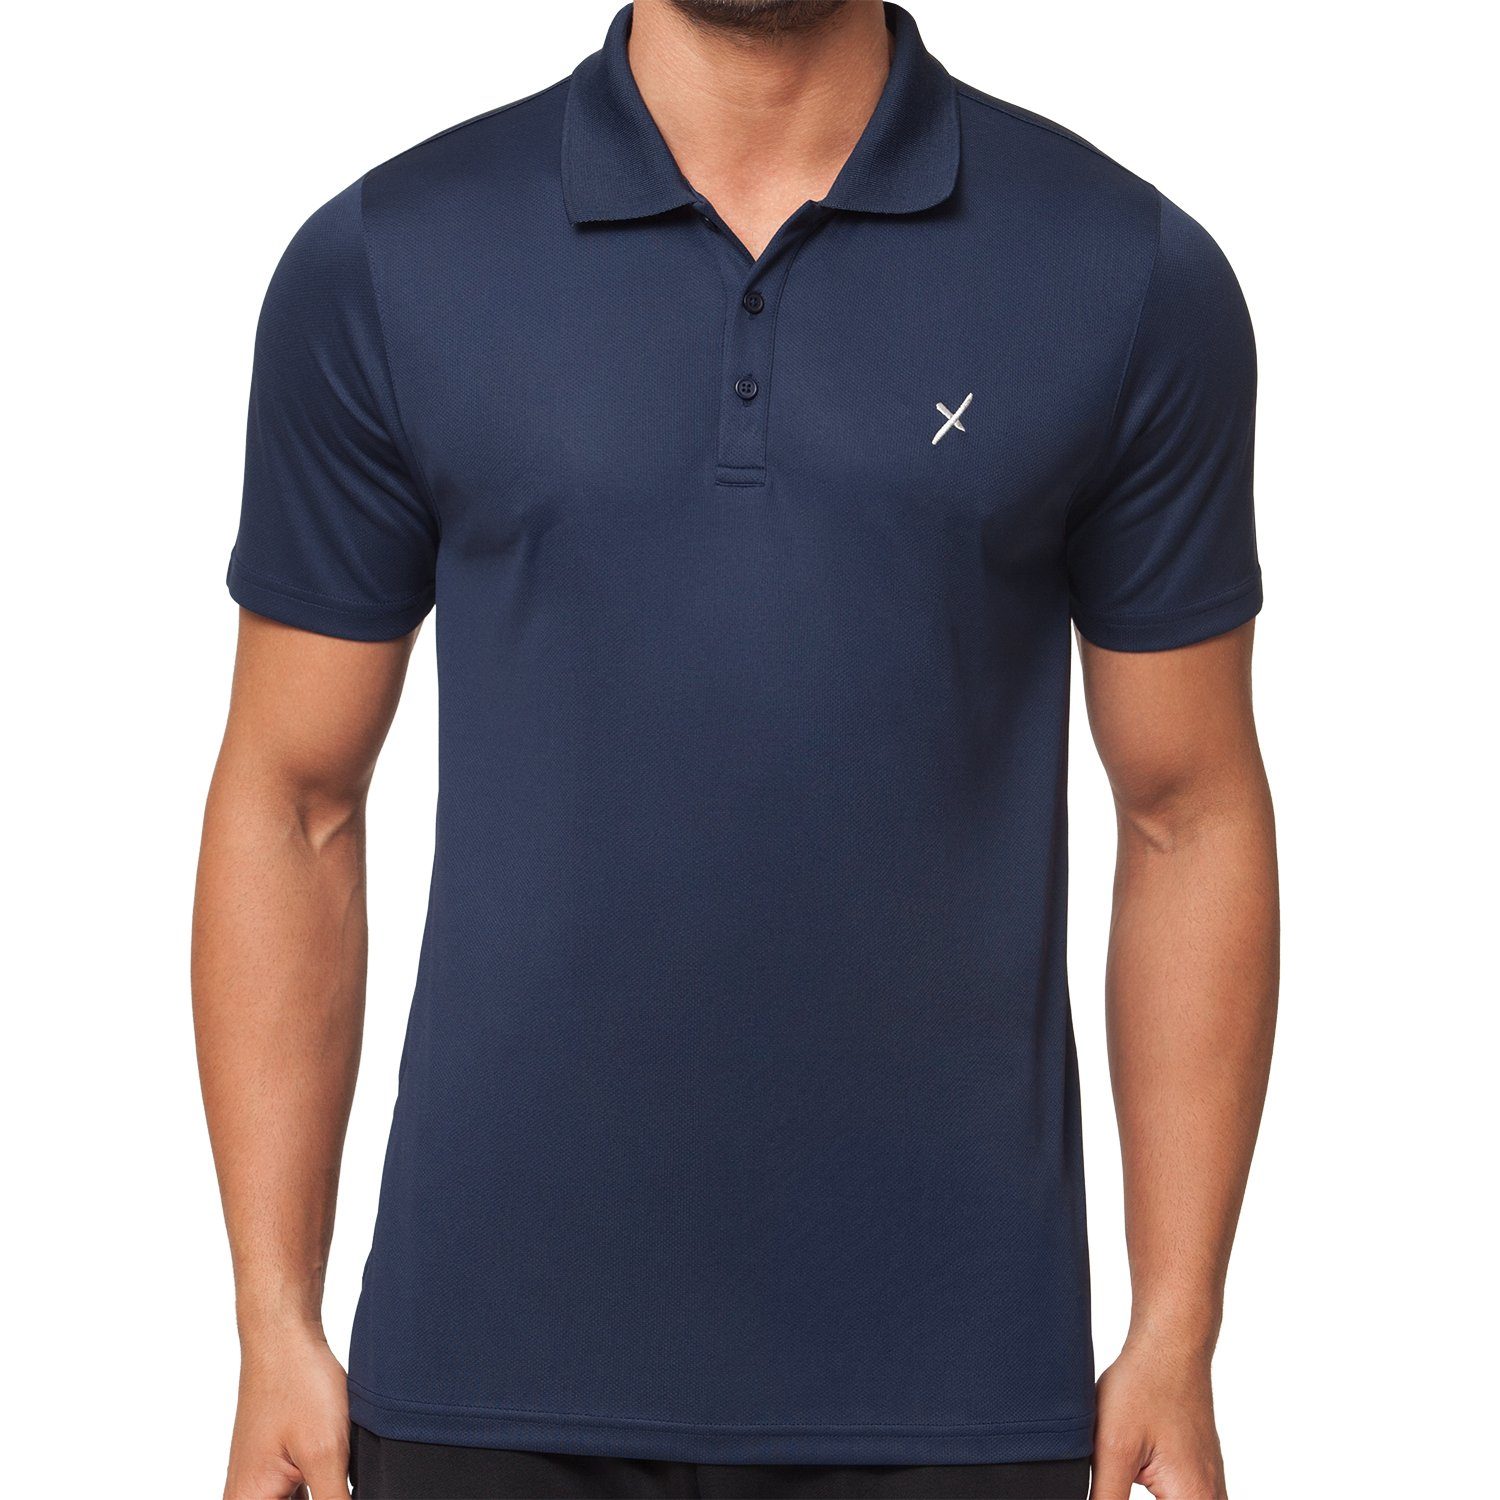 CFLEX Trainingsshirt Herren Sport Collection Shirt Polo-Shirt Sportswear Fitness Navy